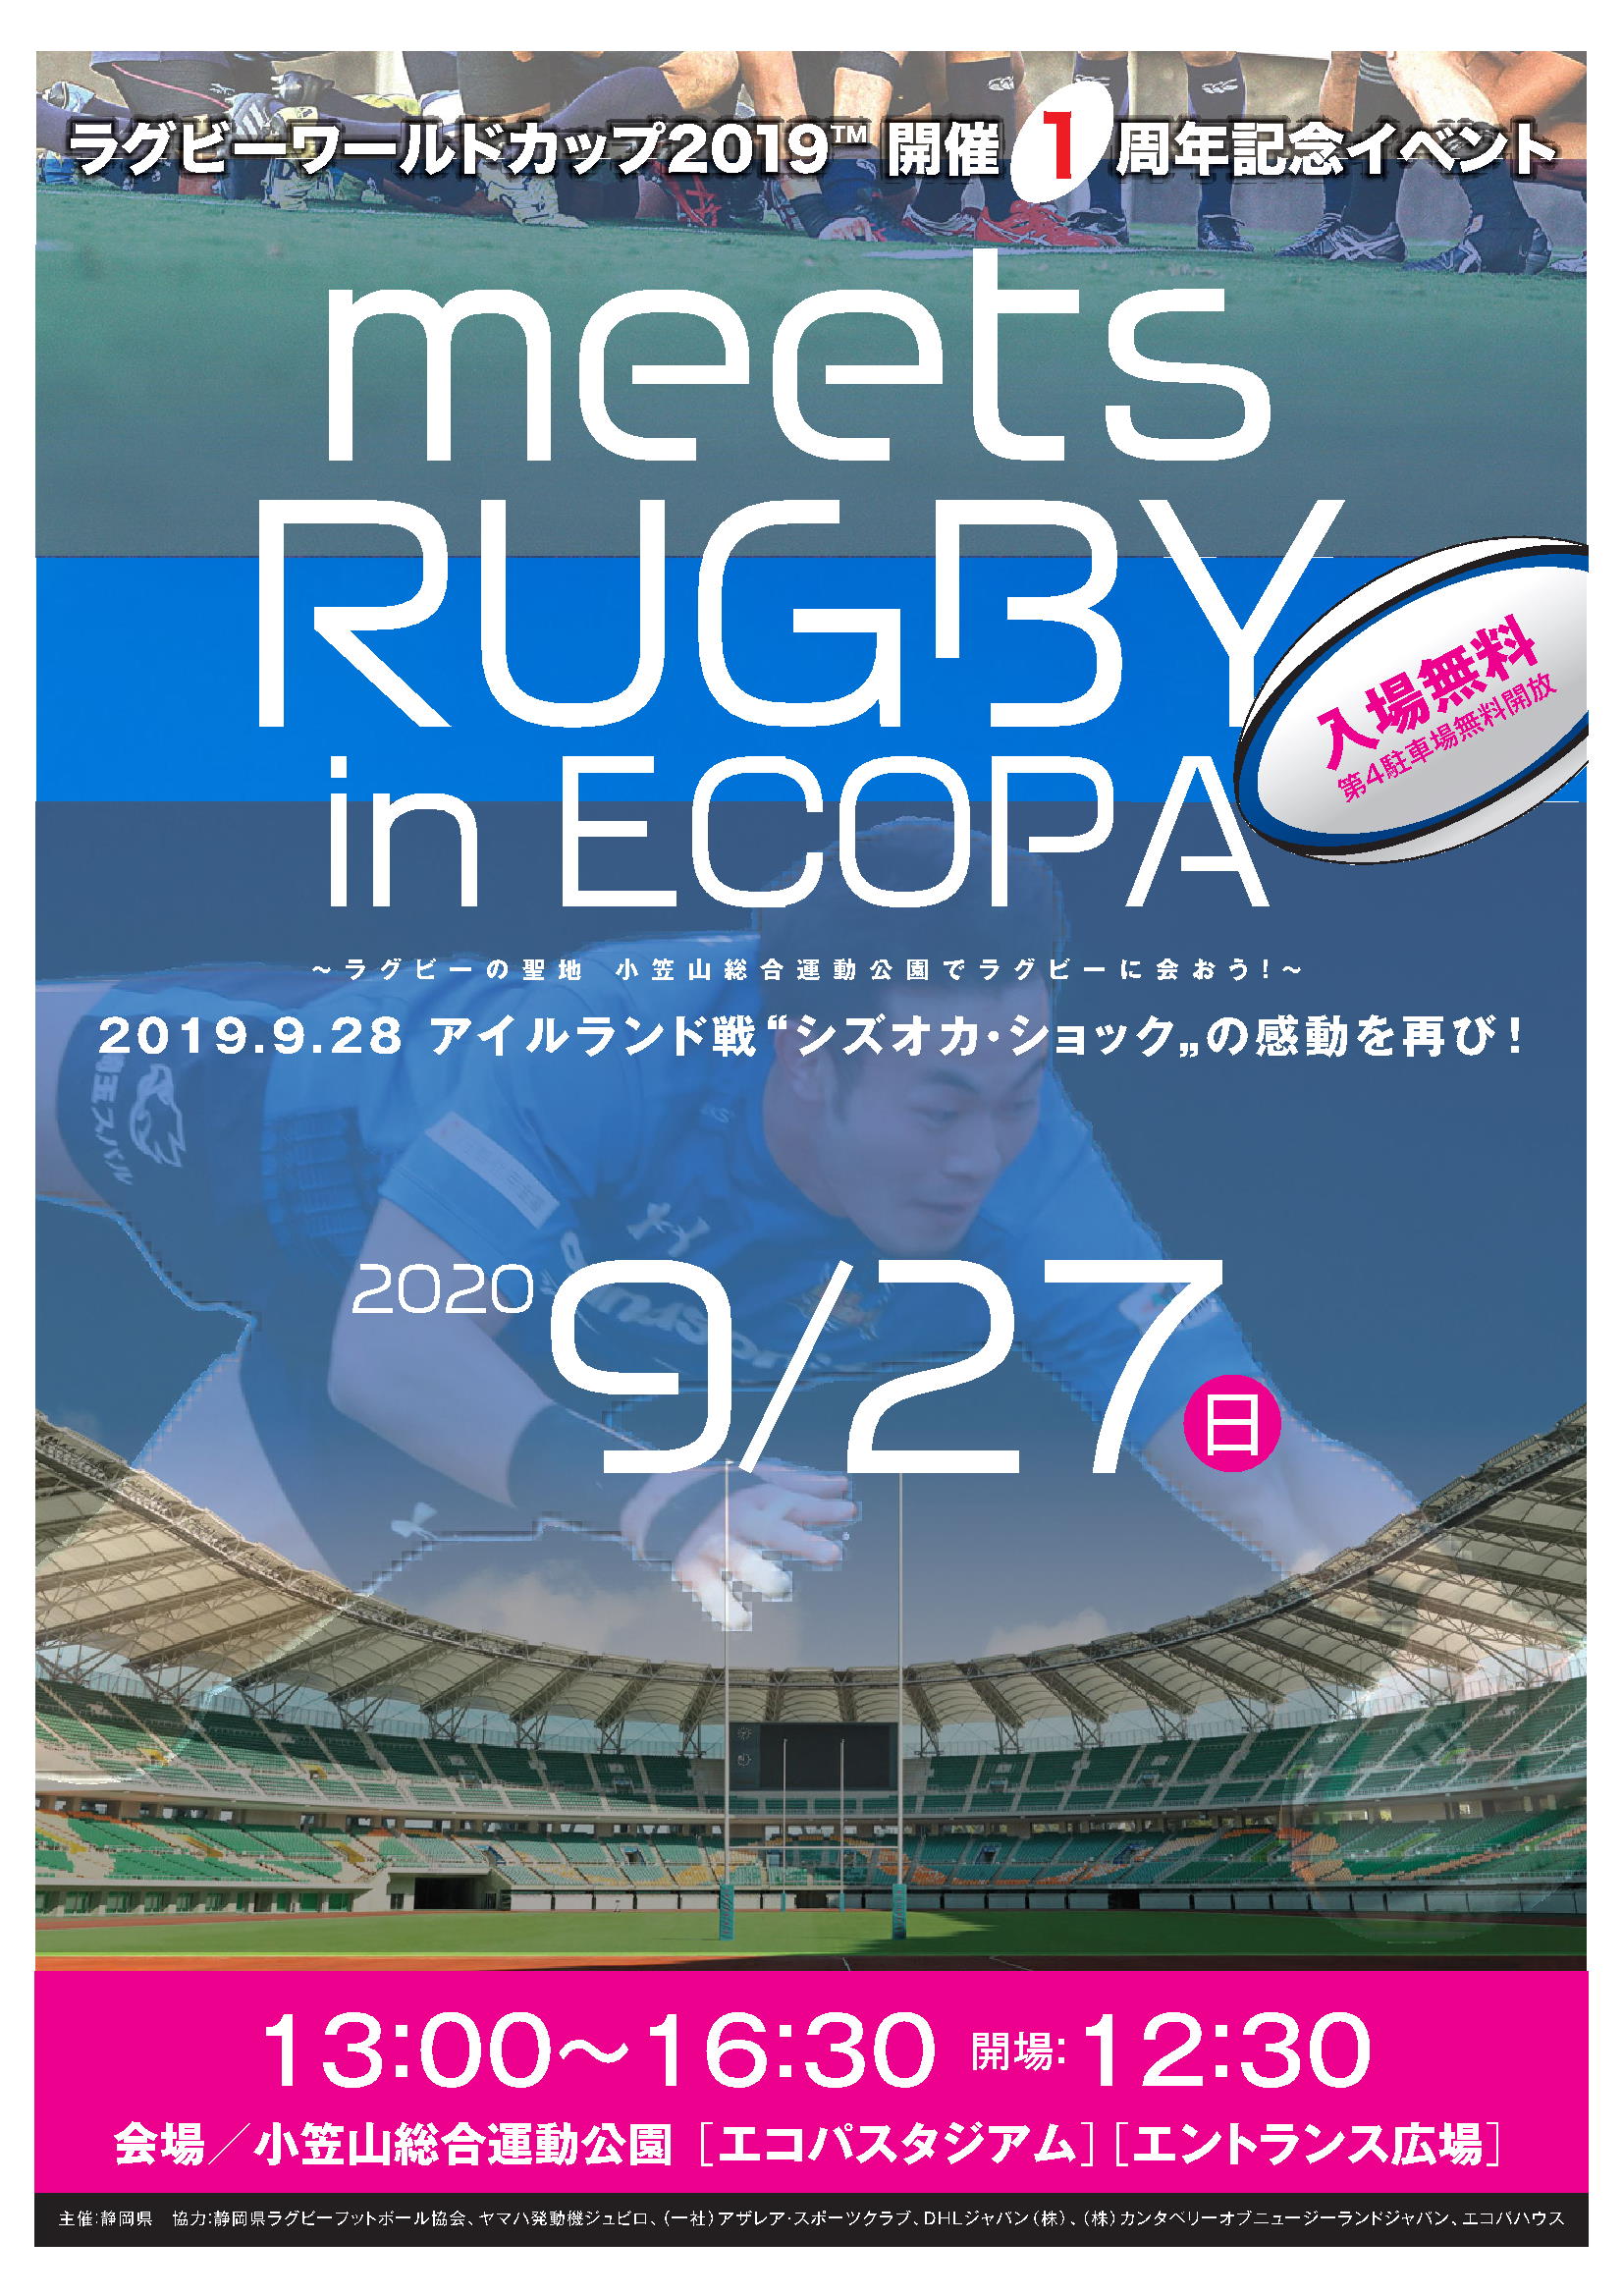 9 27 エコパスタジアムにてイベントが開催されます 関西ラグビーフットボール協会